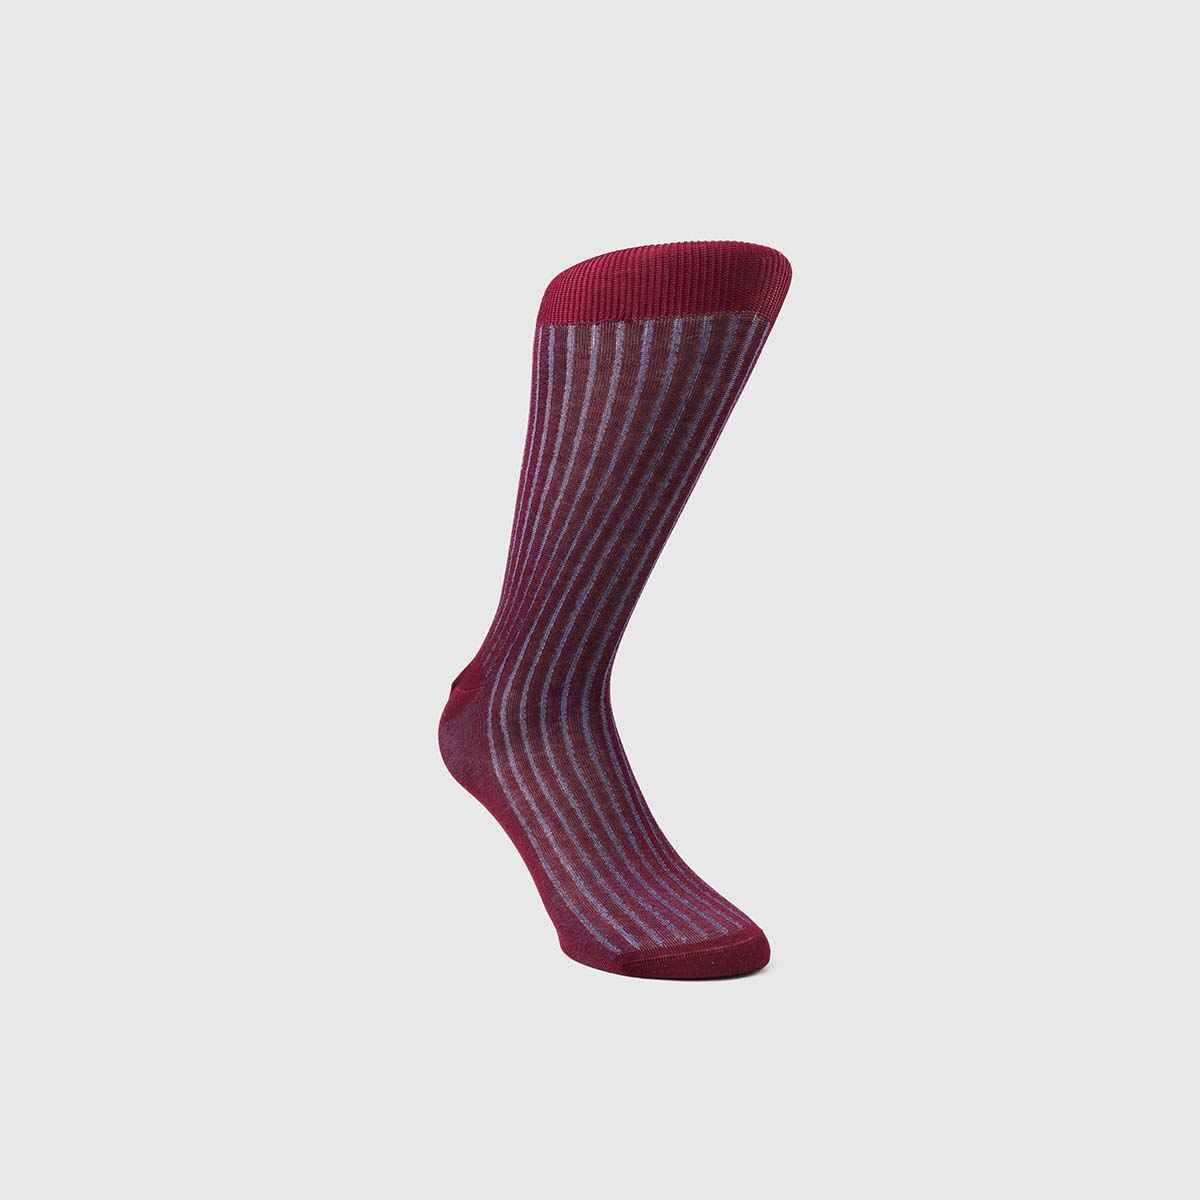 Bresciani 1970 Cotton Socks in Ruby & Cornflower – M